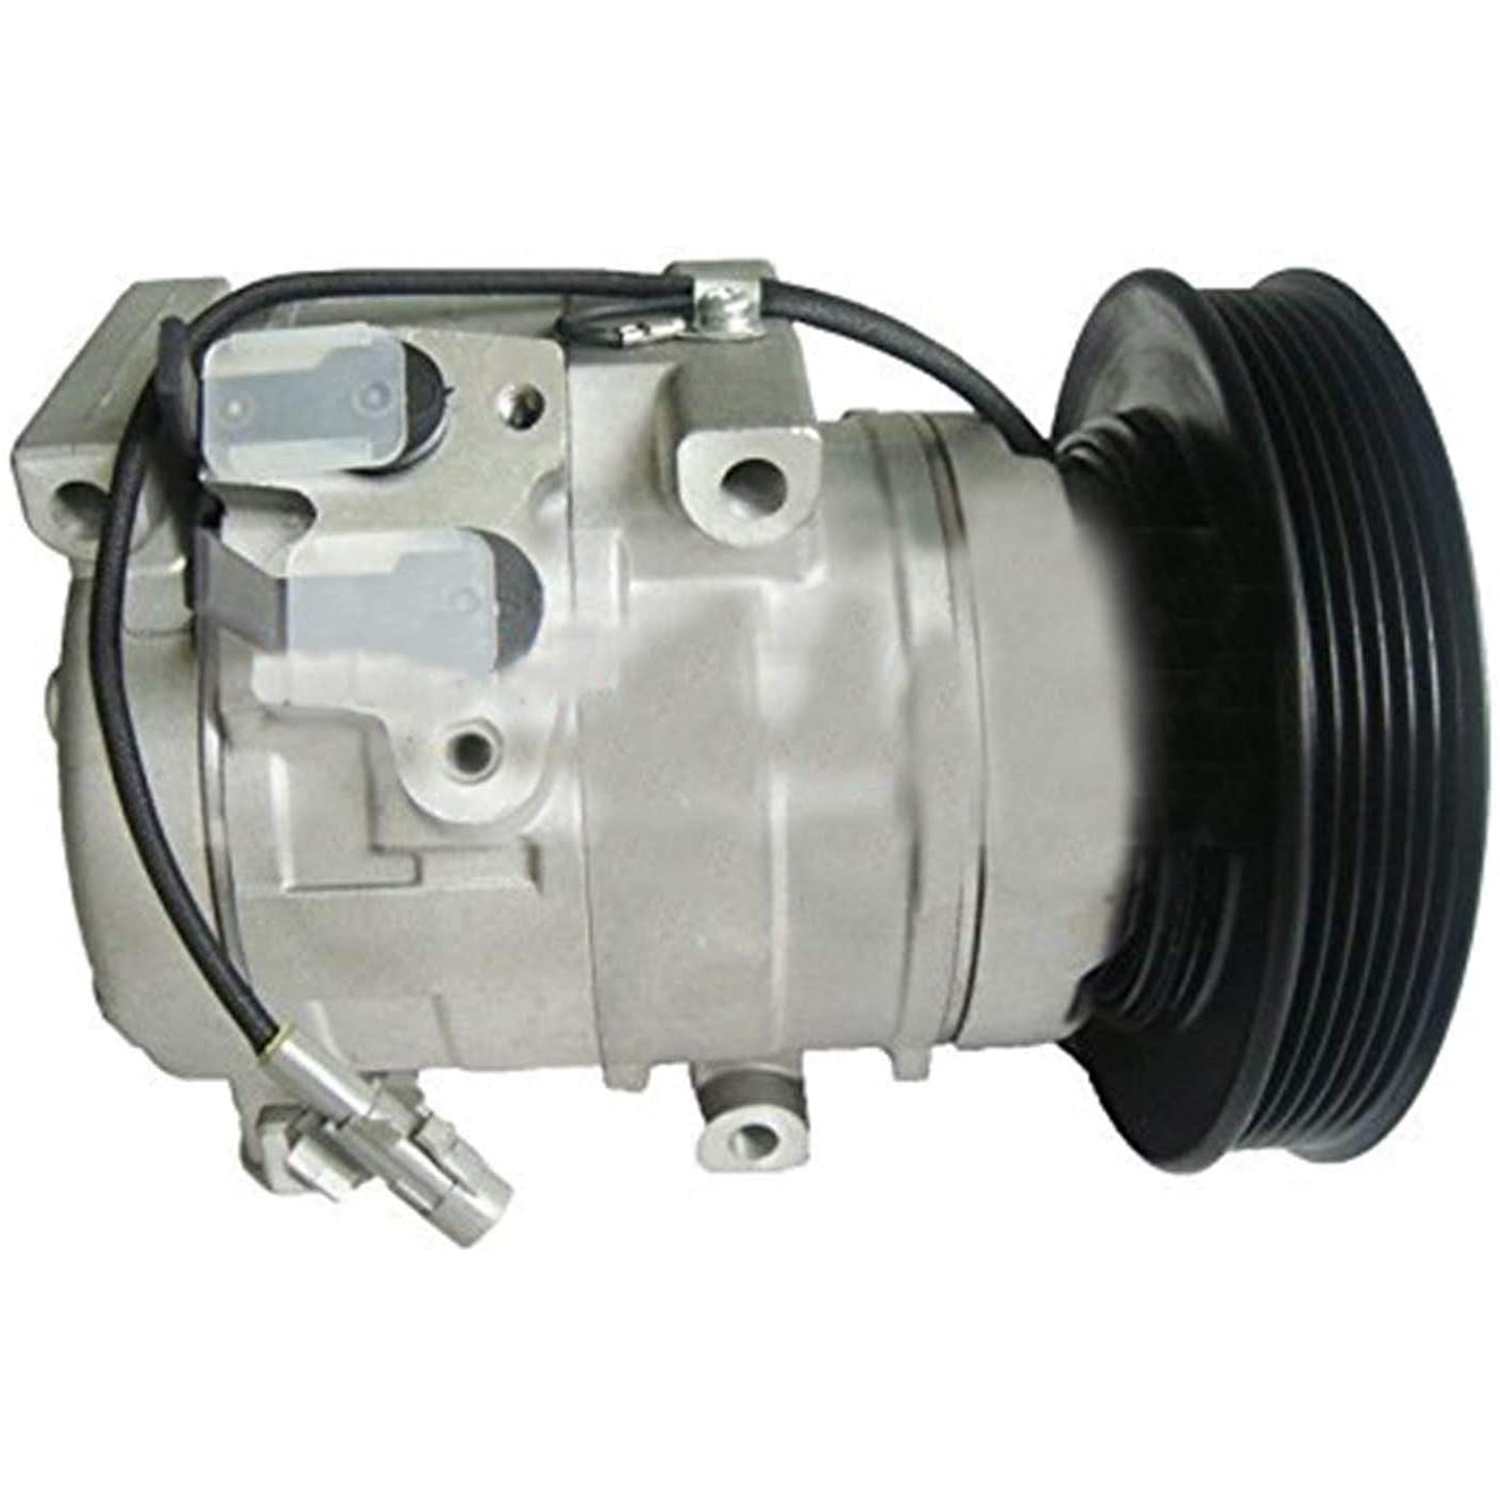 A/C Compressor 38810-RFE-003 447220-5920 for Honda Odyssey RB1 K24A